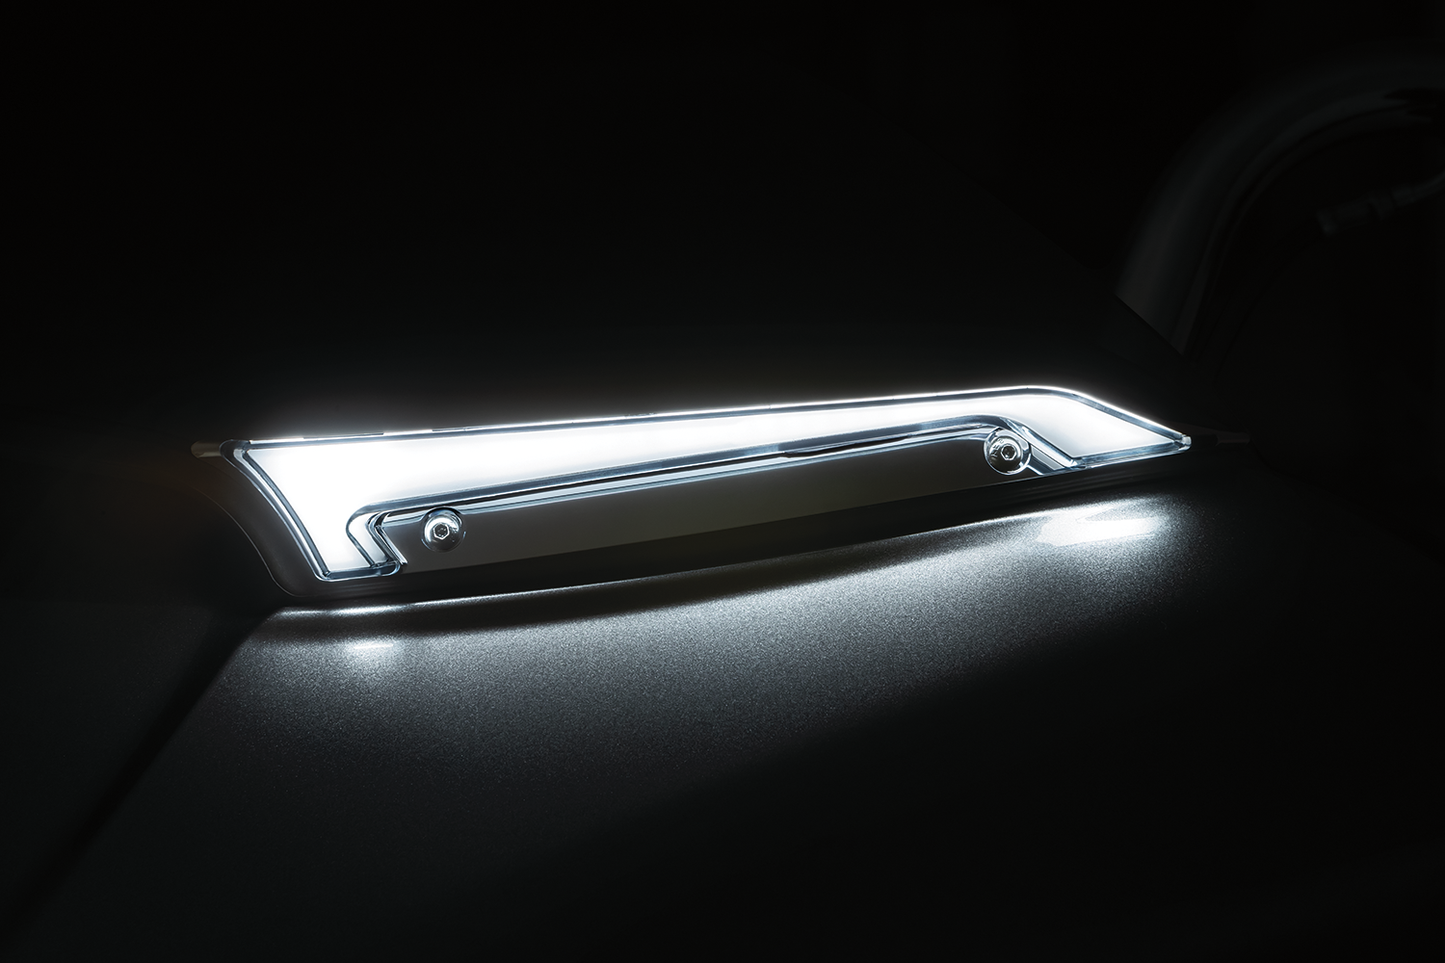 LED LEDs of the Windshield Adorns Chromed tracer for Harley Davidson